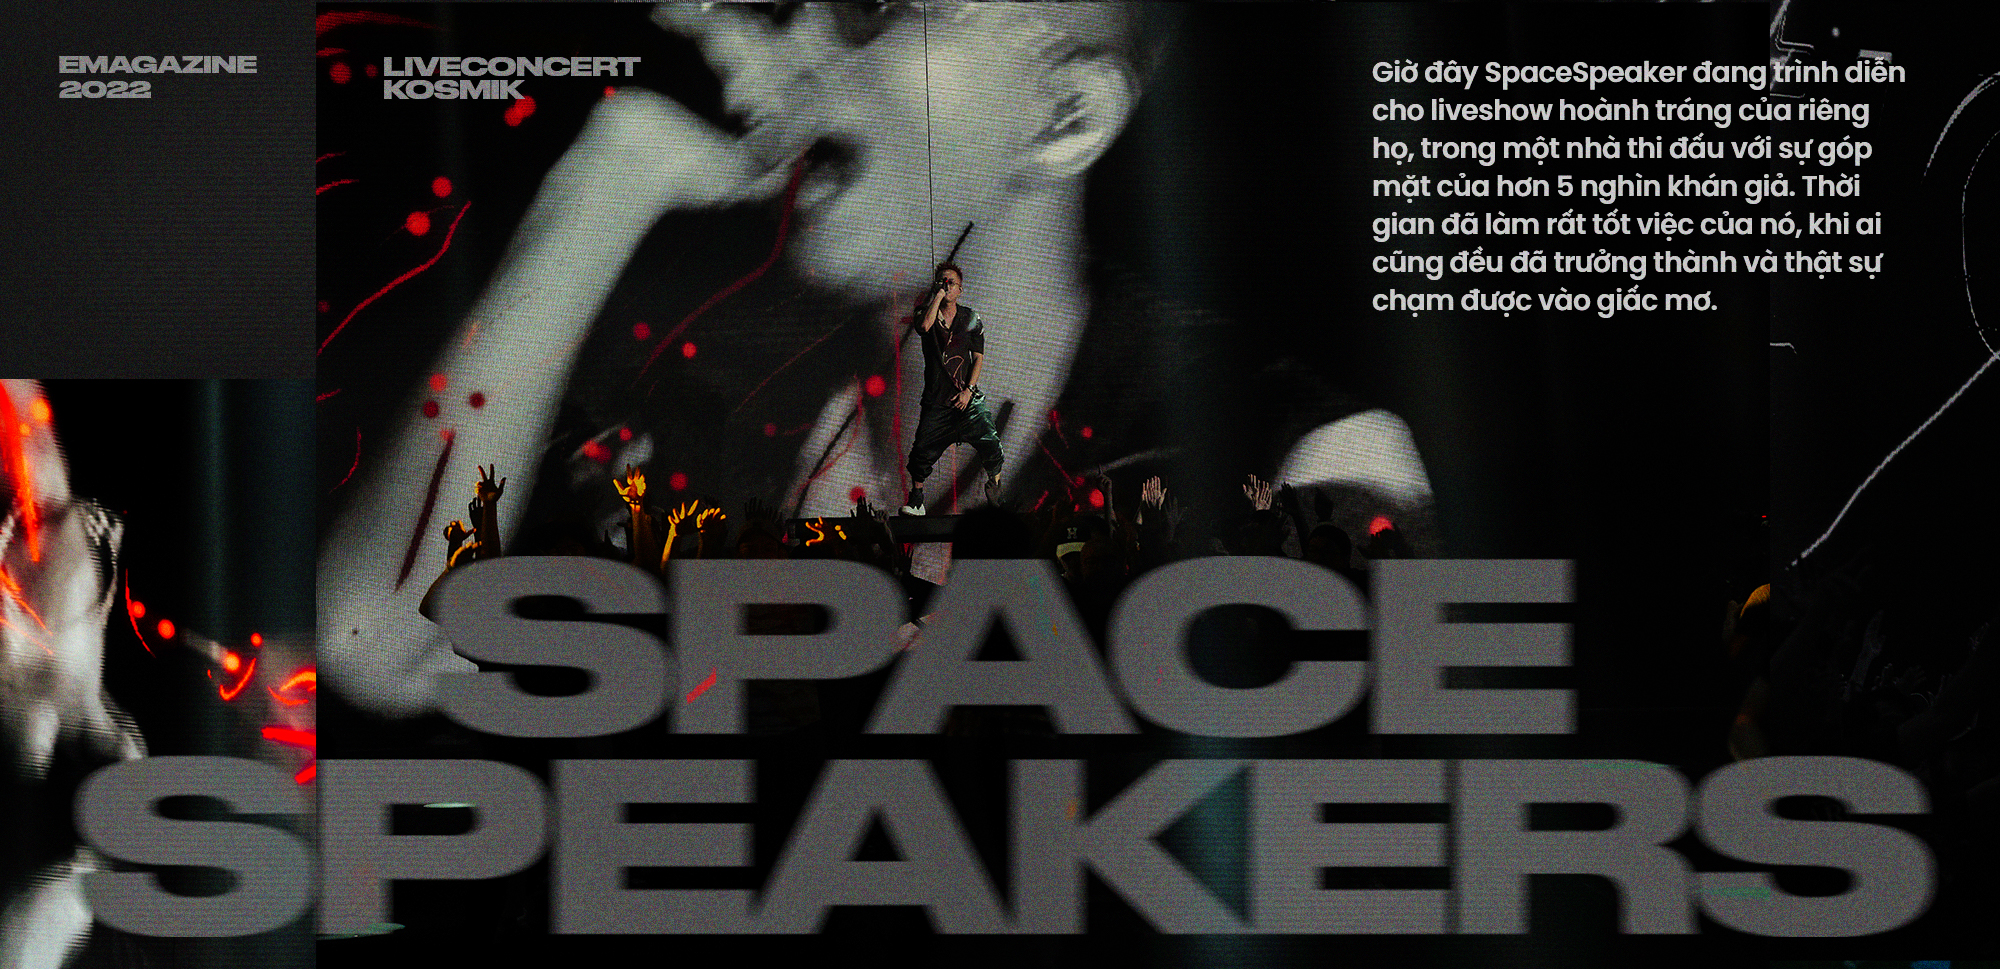 SpaceSpeakers và live-concert KOSMIK: Câu trả lời cho những giấc mơ tuổi trẻ - Ảnh 11.